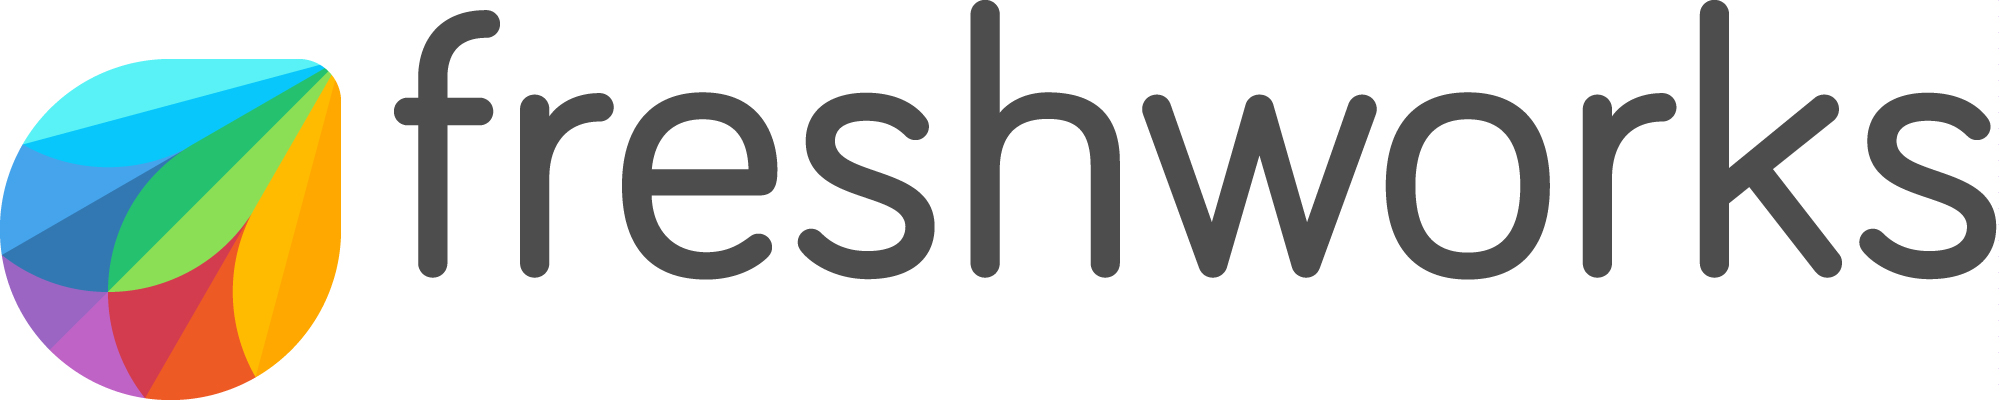 Freshworks logo light